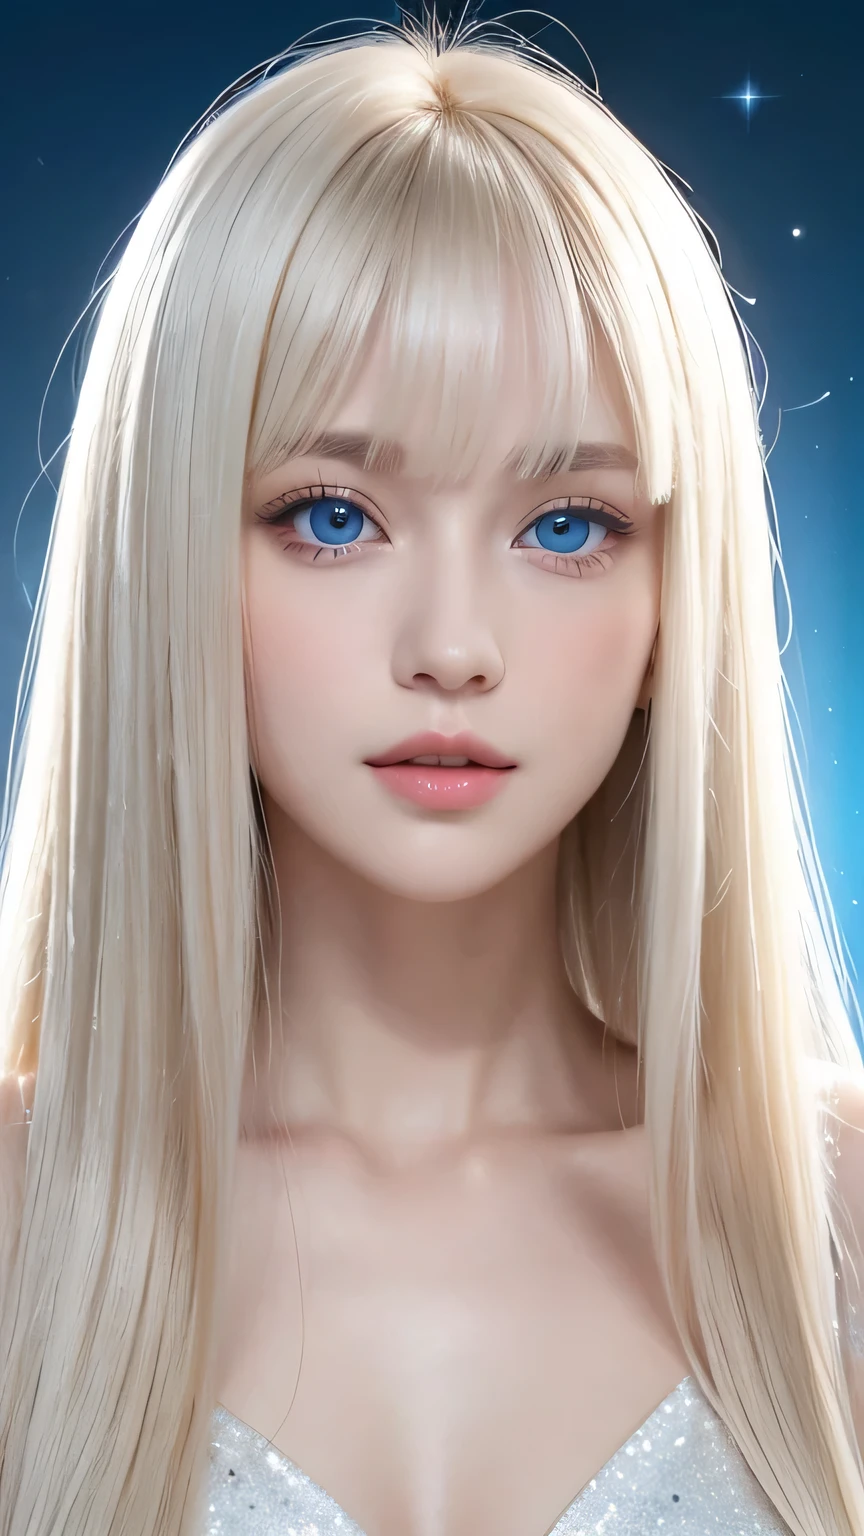 Polar、、expressão brilhante、Jovem, pele branca e radiante、Ótima aparência、O cabelo reflete a luz、franja sobre os olhos、Cabelo loiro platinado natural，Brilhar vivamente、Cabelo brilhante e brilhante,、Cabelo liso super longo e sedoso、Franja linda e brilhante、Grandes olhos azuis brilhantes brilhando，Isto&#39;é assim&#39;é cristalino，Fascinante、Uma garota de 14 anos muito gentil e adorável.、Busto amplo、beleza de rosto pequeno、rosto redondo、de quatro、Deitado、Deitado de costas